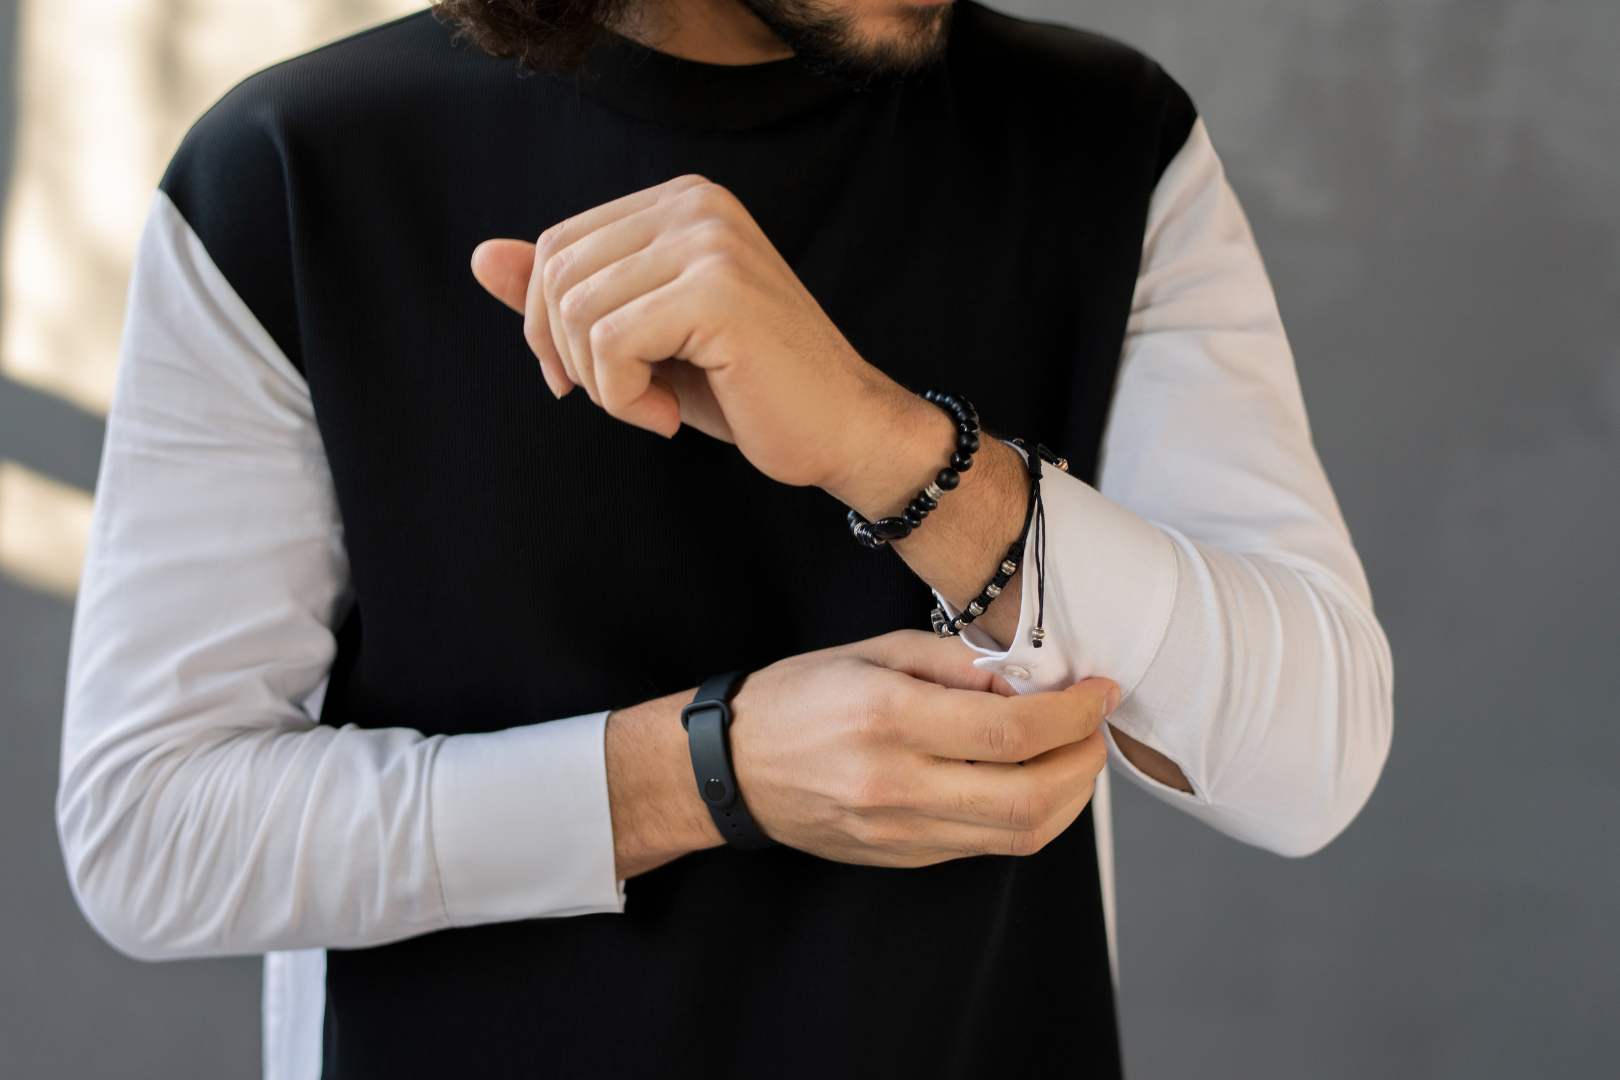 Gioielli uomo Torino: come scegliere collane, bracciali e anelli perfetti per lui